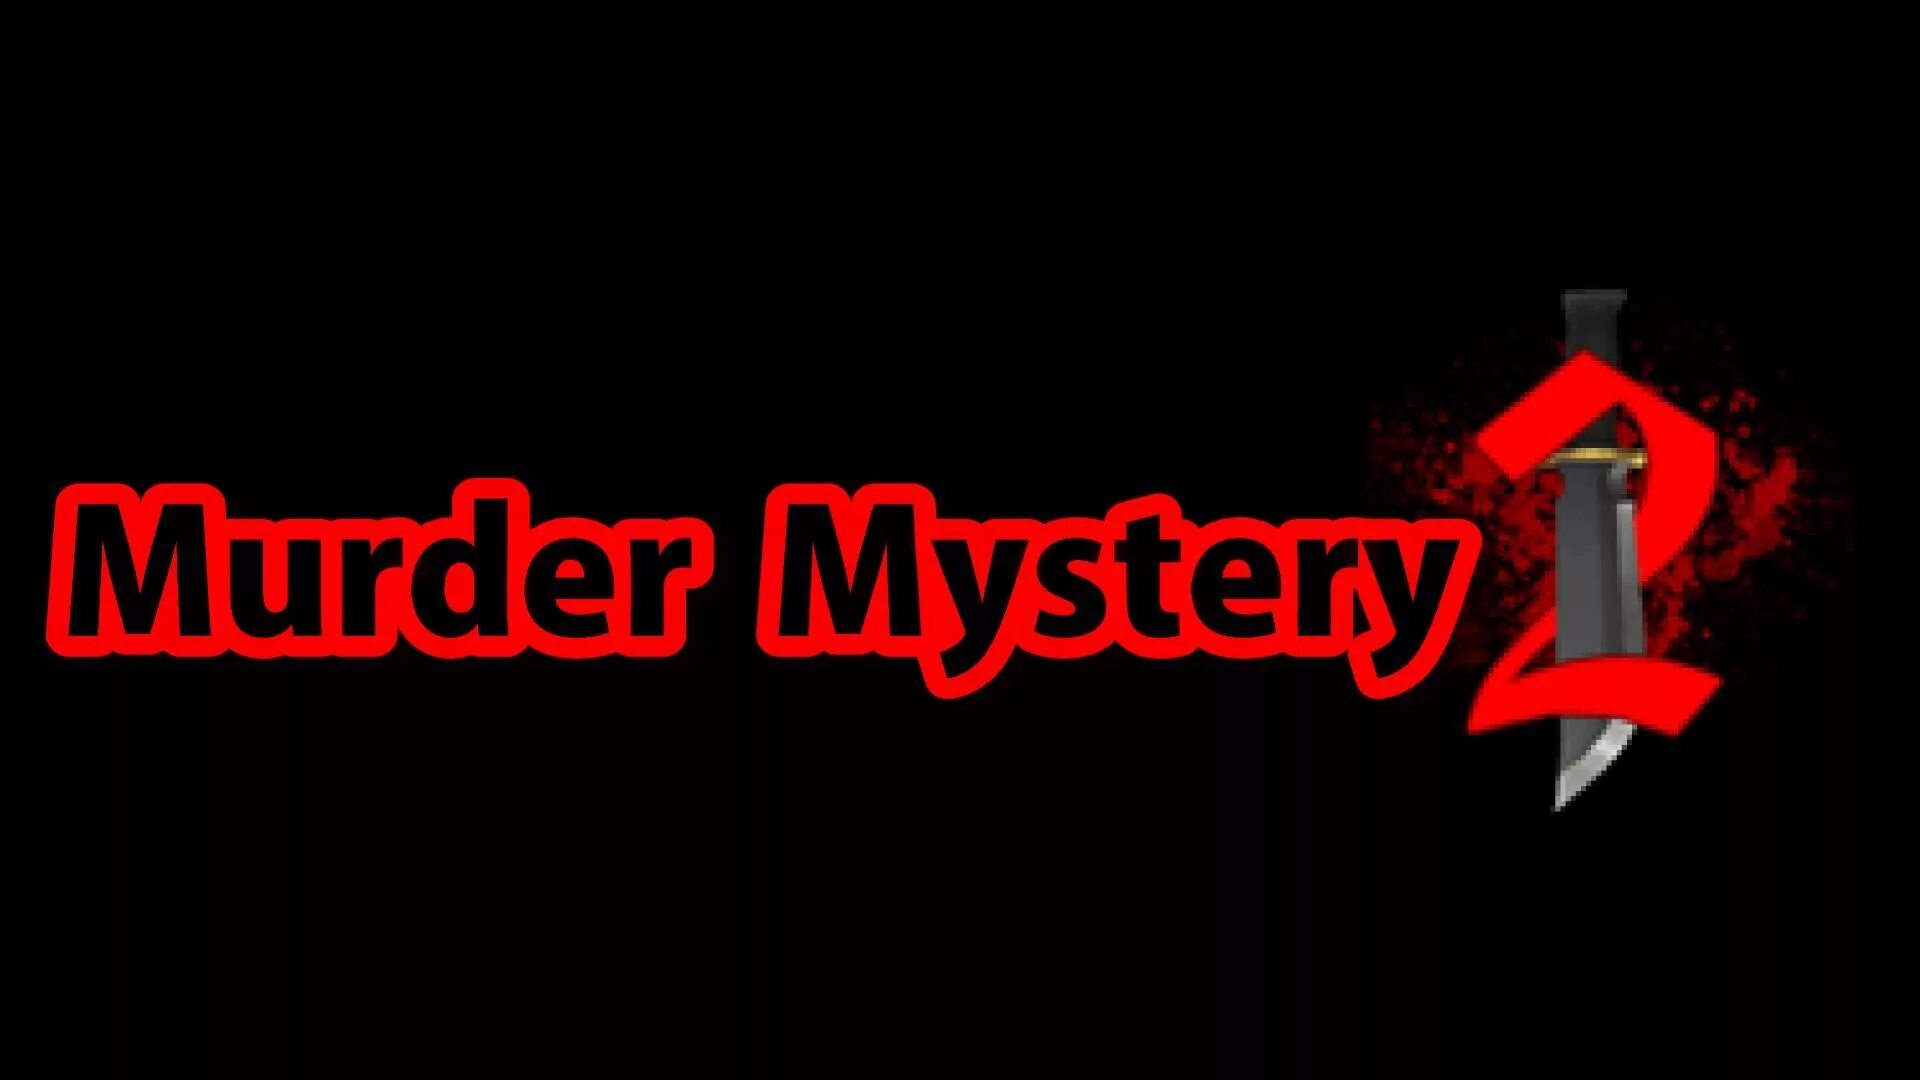 Ава мм 2. Murder Mystery 2 Roblox фон. Murder Mystery РОБЛОКС. РОБЛОКС Murder Mystery 2. Murder Mystery 2 Roblox.